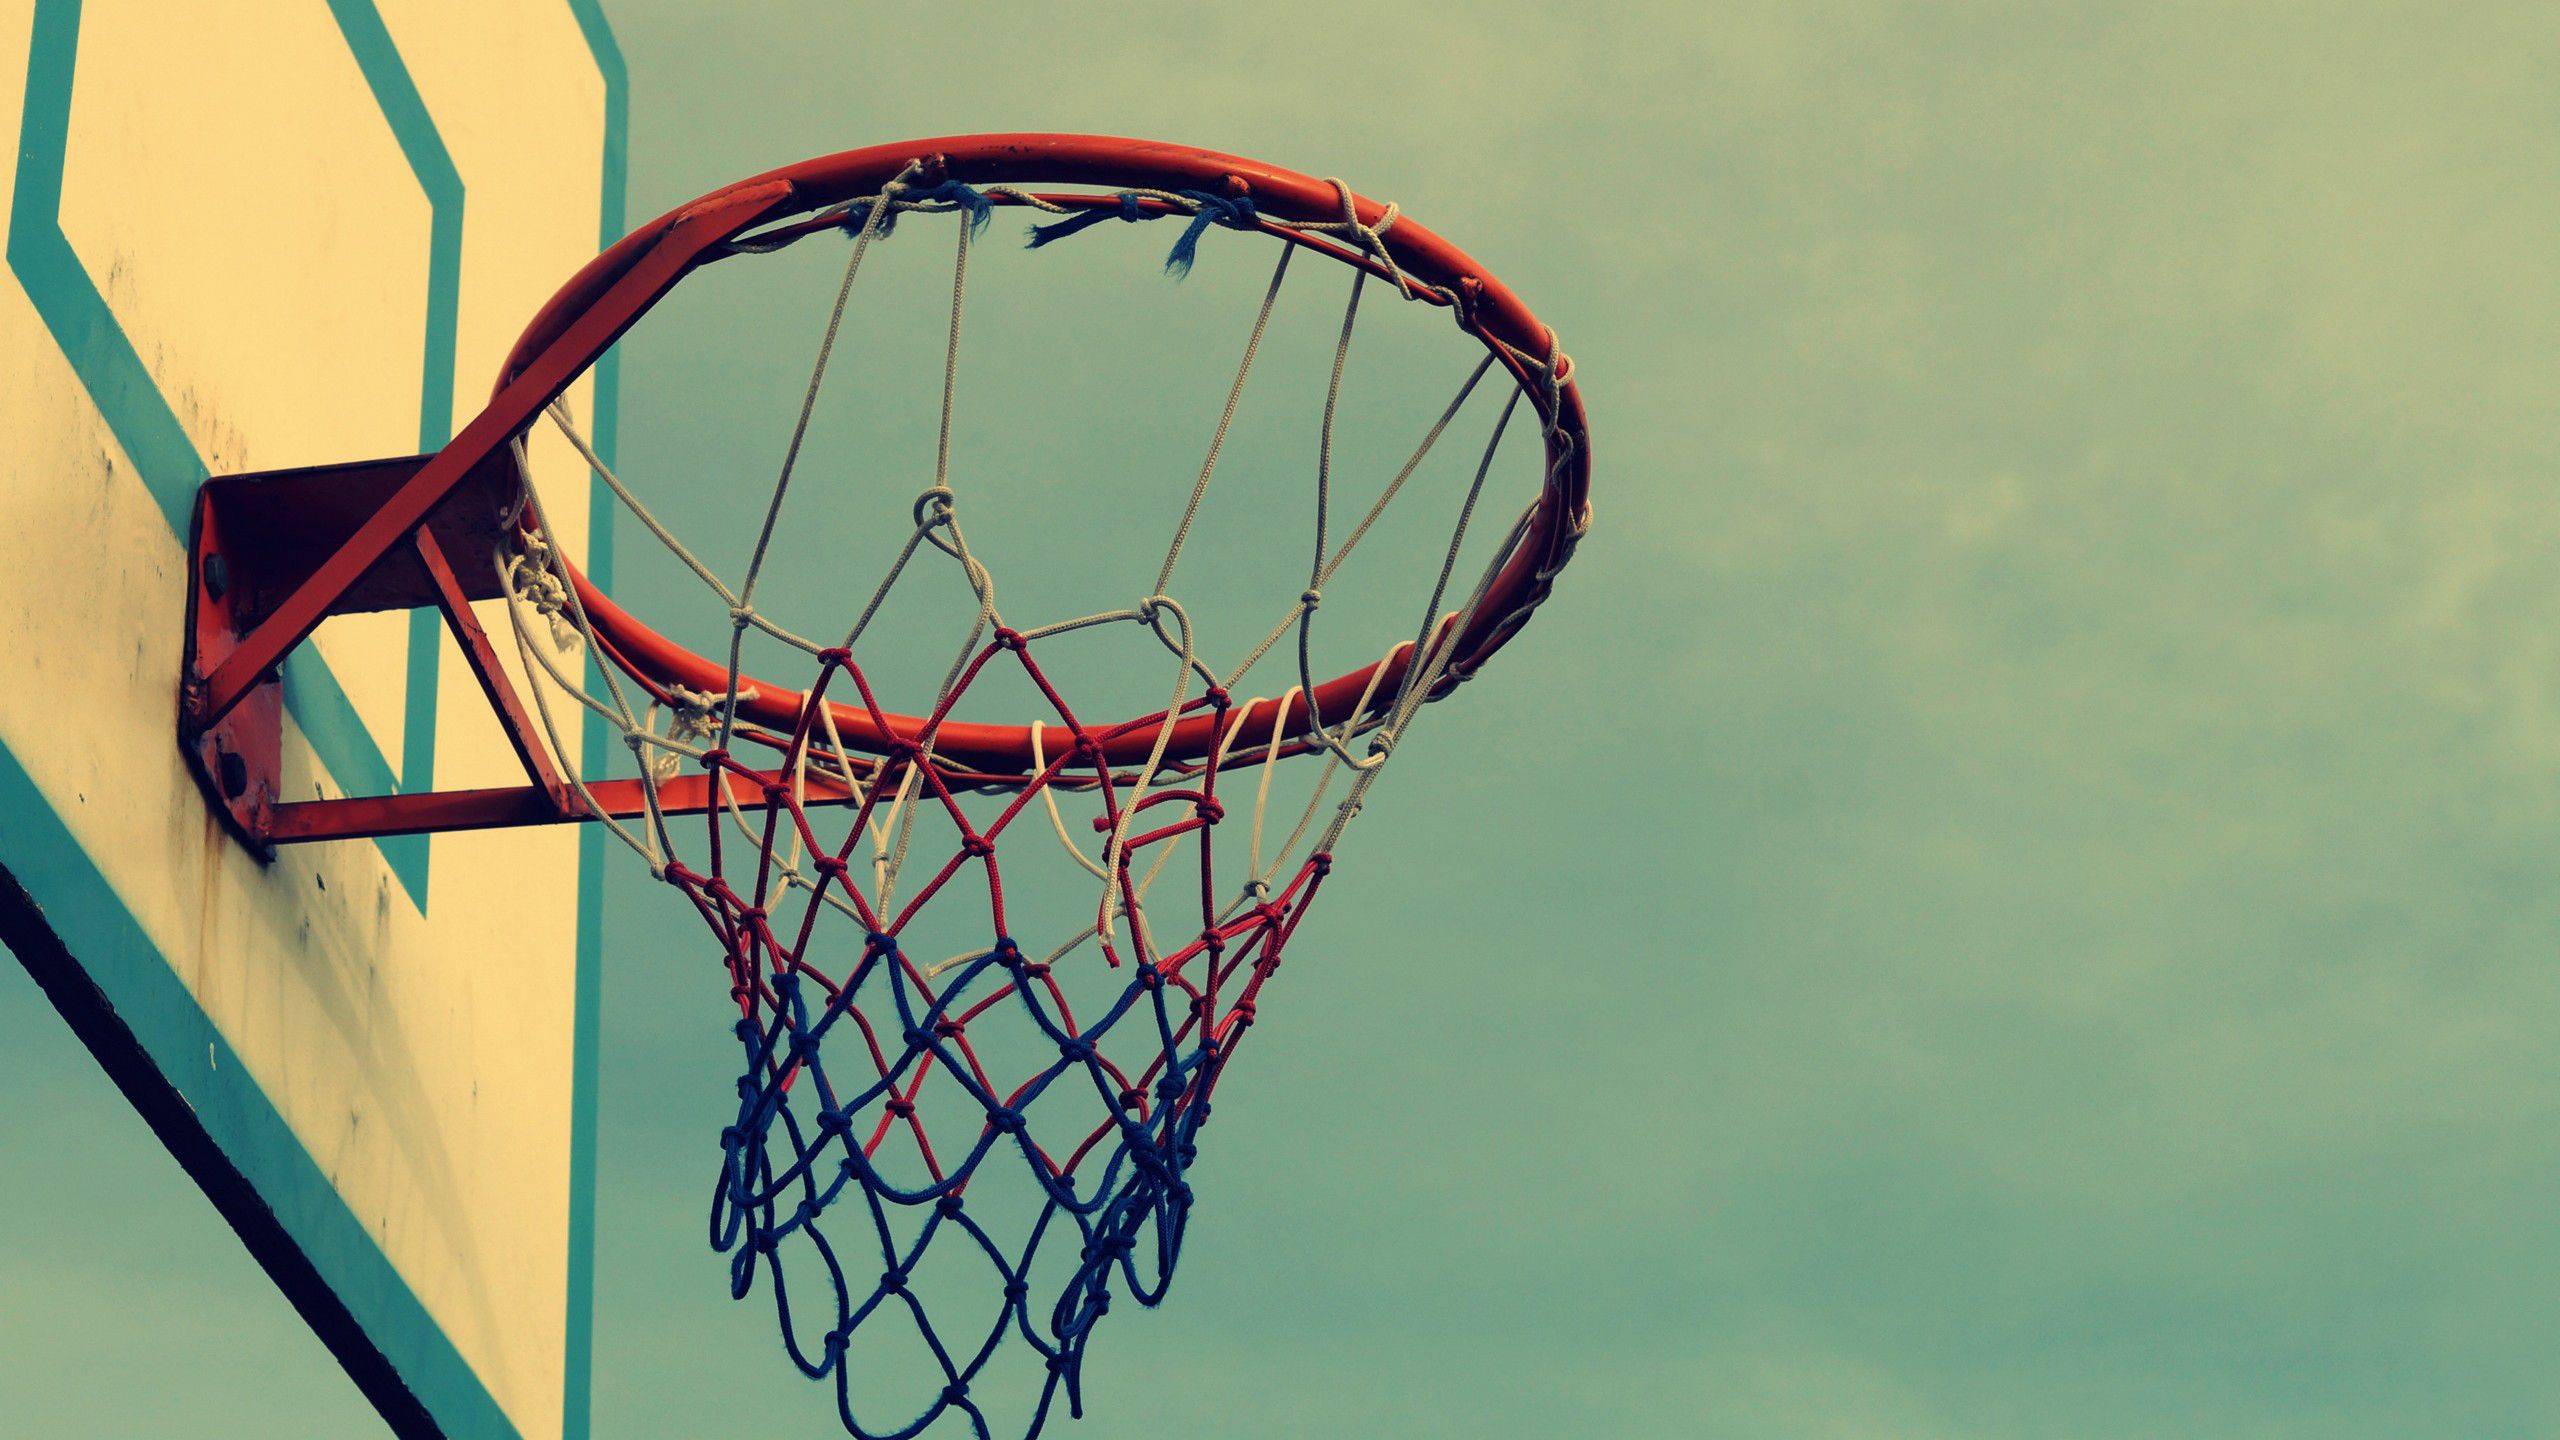 Fondos de pantalla de baloncesto - FondosMil